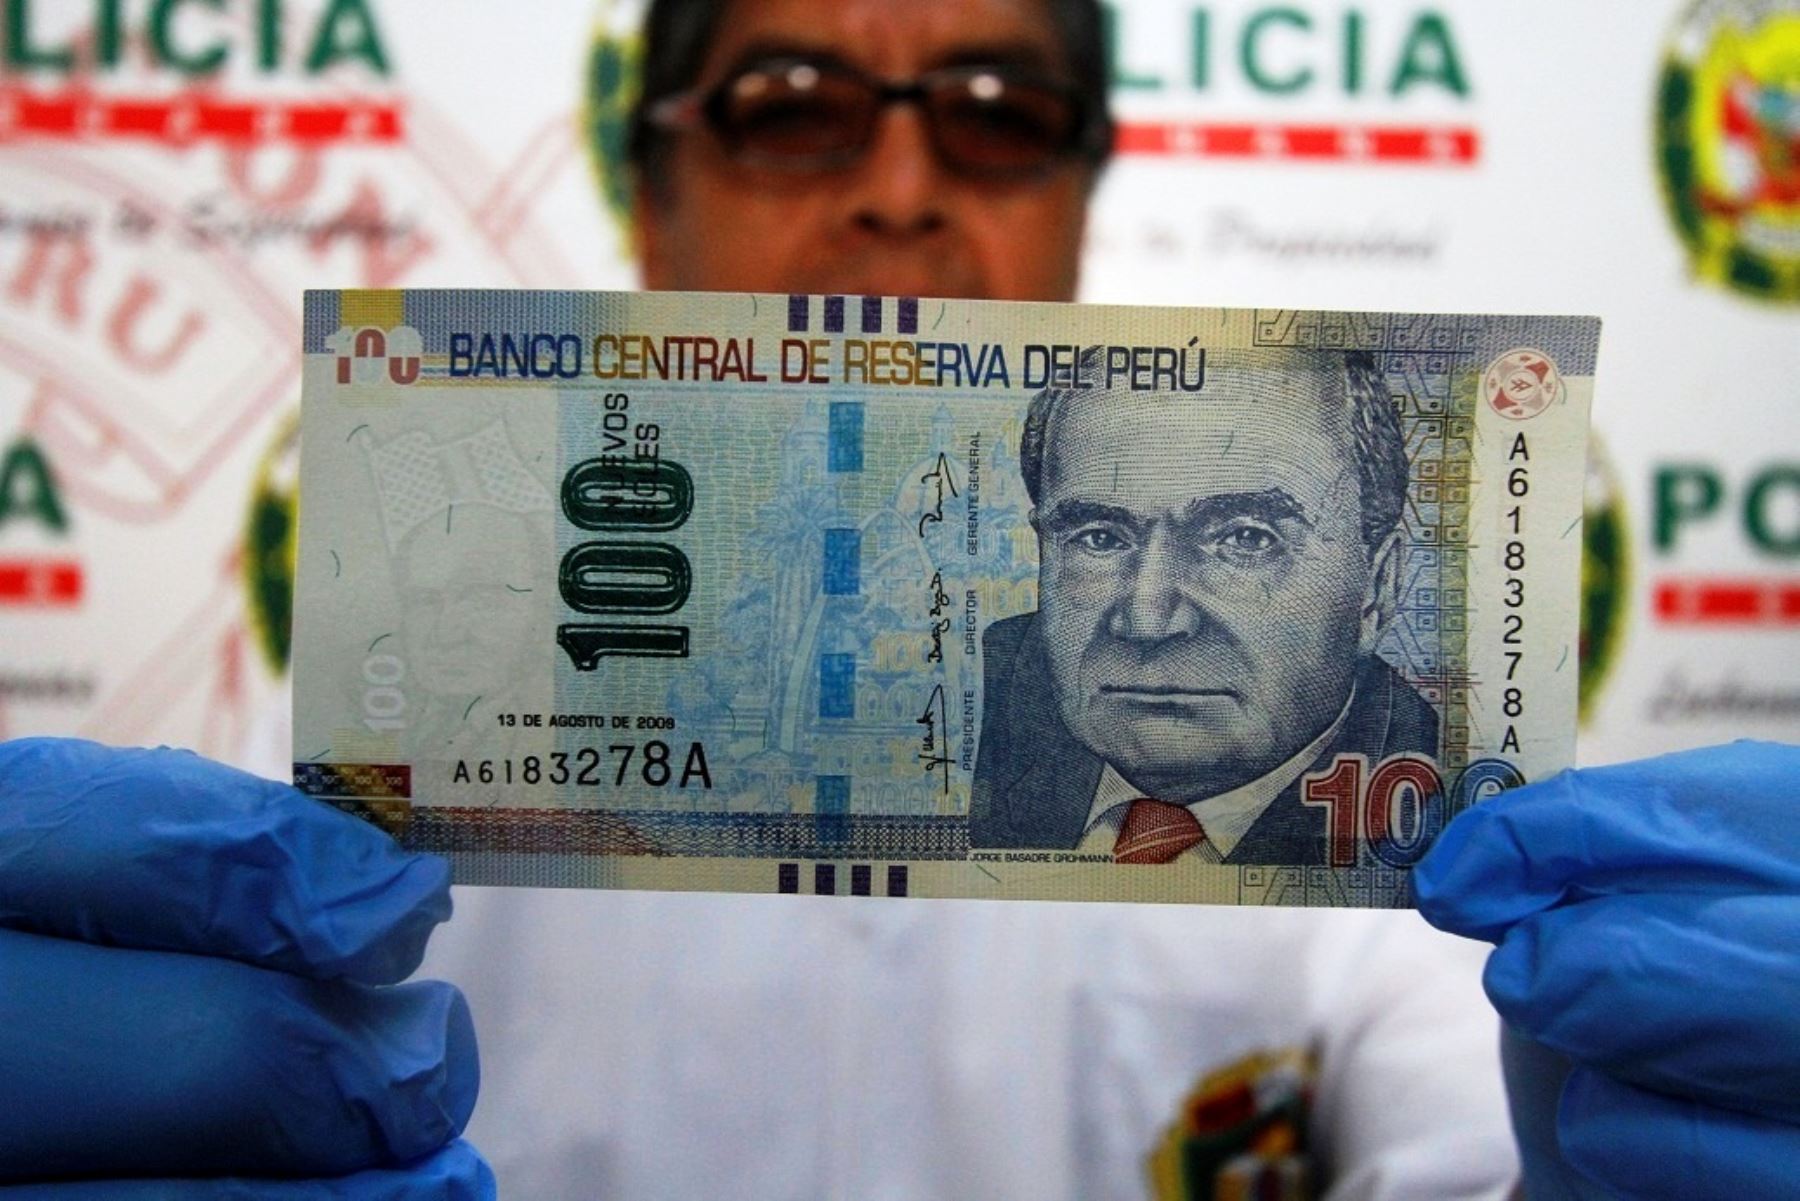 Presunta banda intentaba introducir más de S/ 80,000 en billetes falsos en Cusco. ANDINA/Percy Hurtado